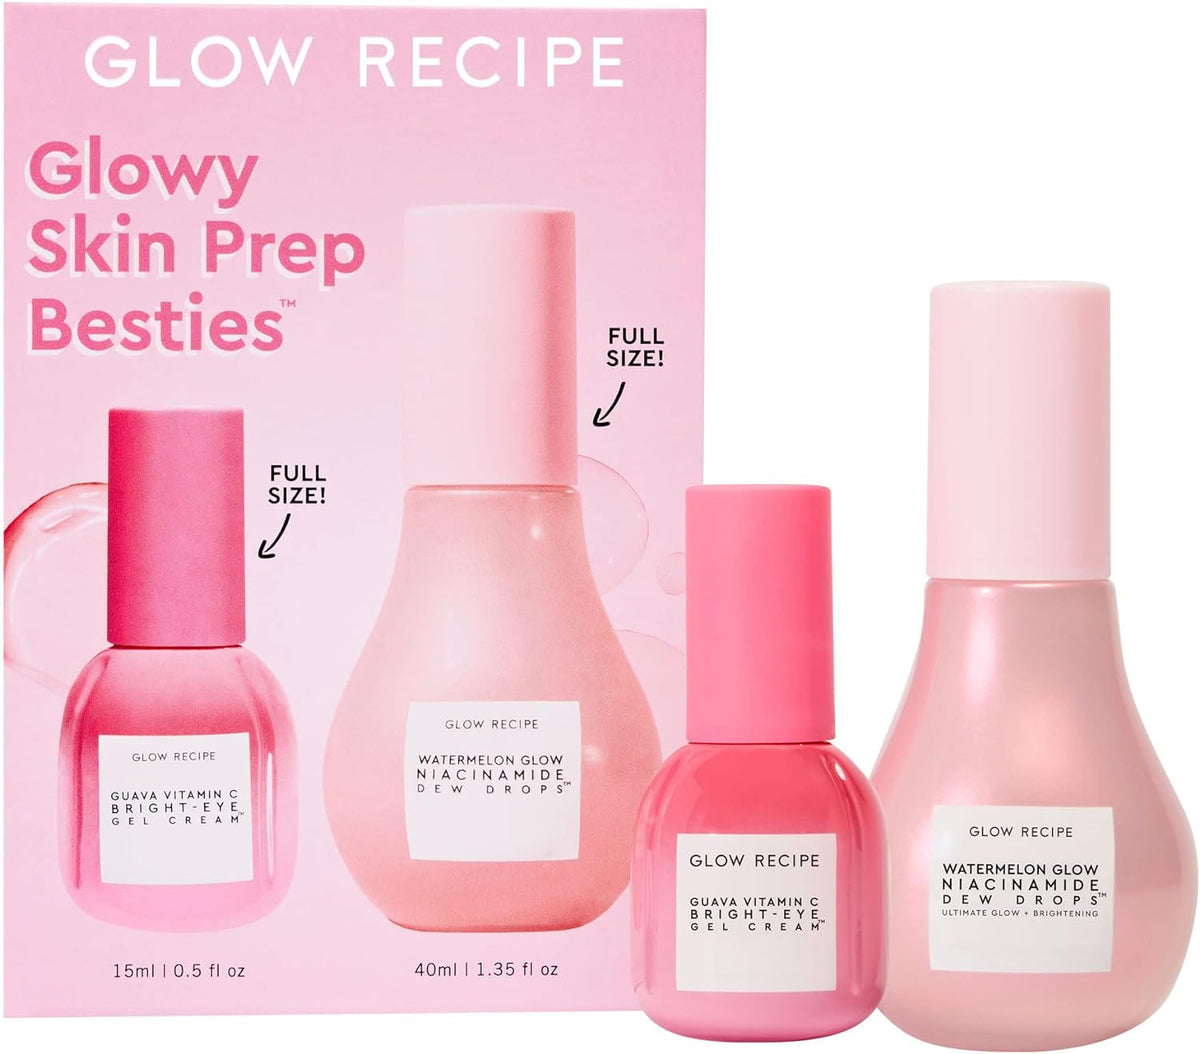 Glow Recipe Glowy Skin Prep Besties Watermelon Glow Niacinamide 40Ml+Eye Cream 15Ml